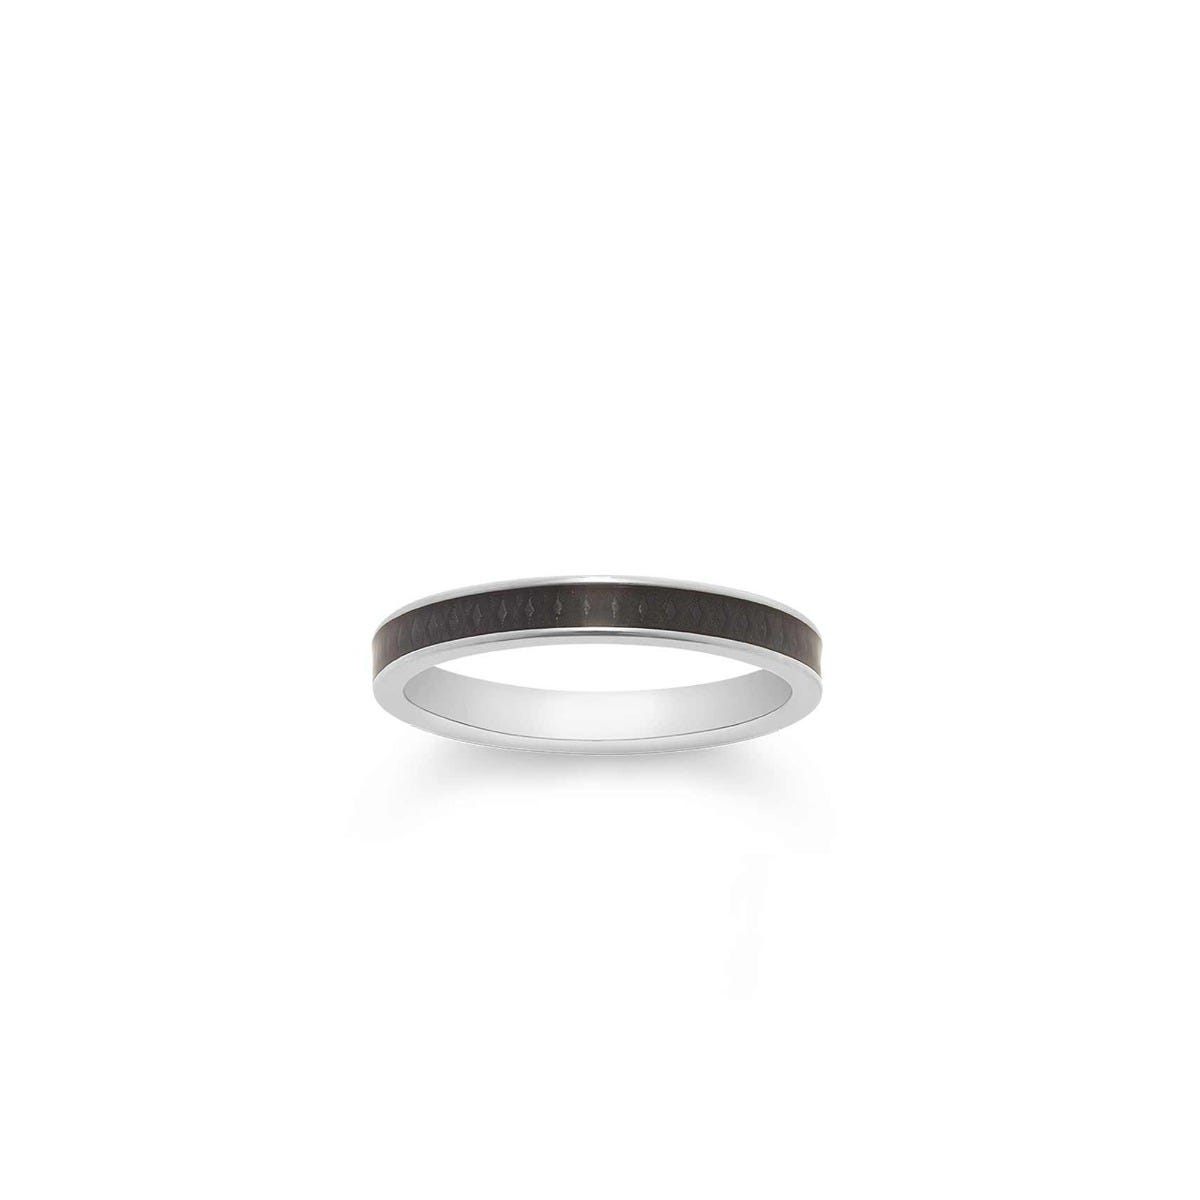 167 Enamel Ring in White Gold 3mm, Black